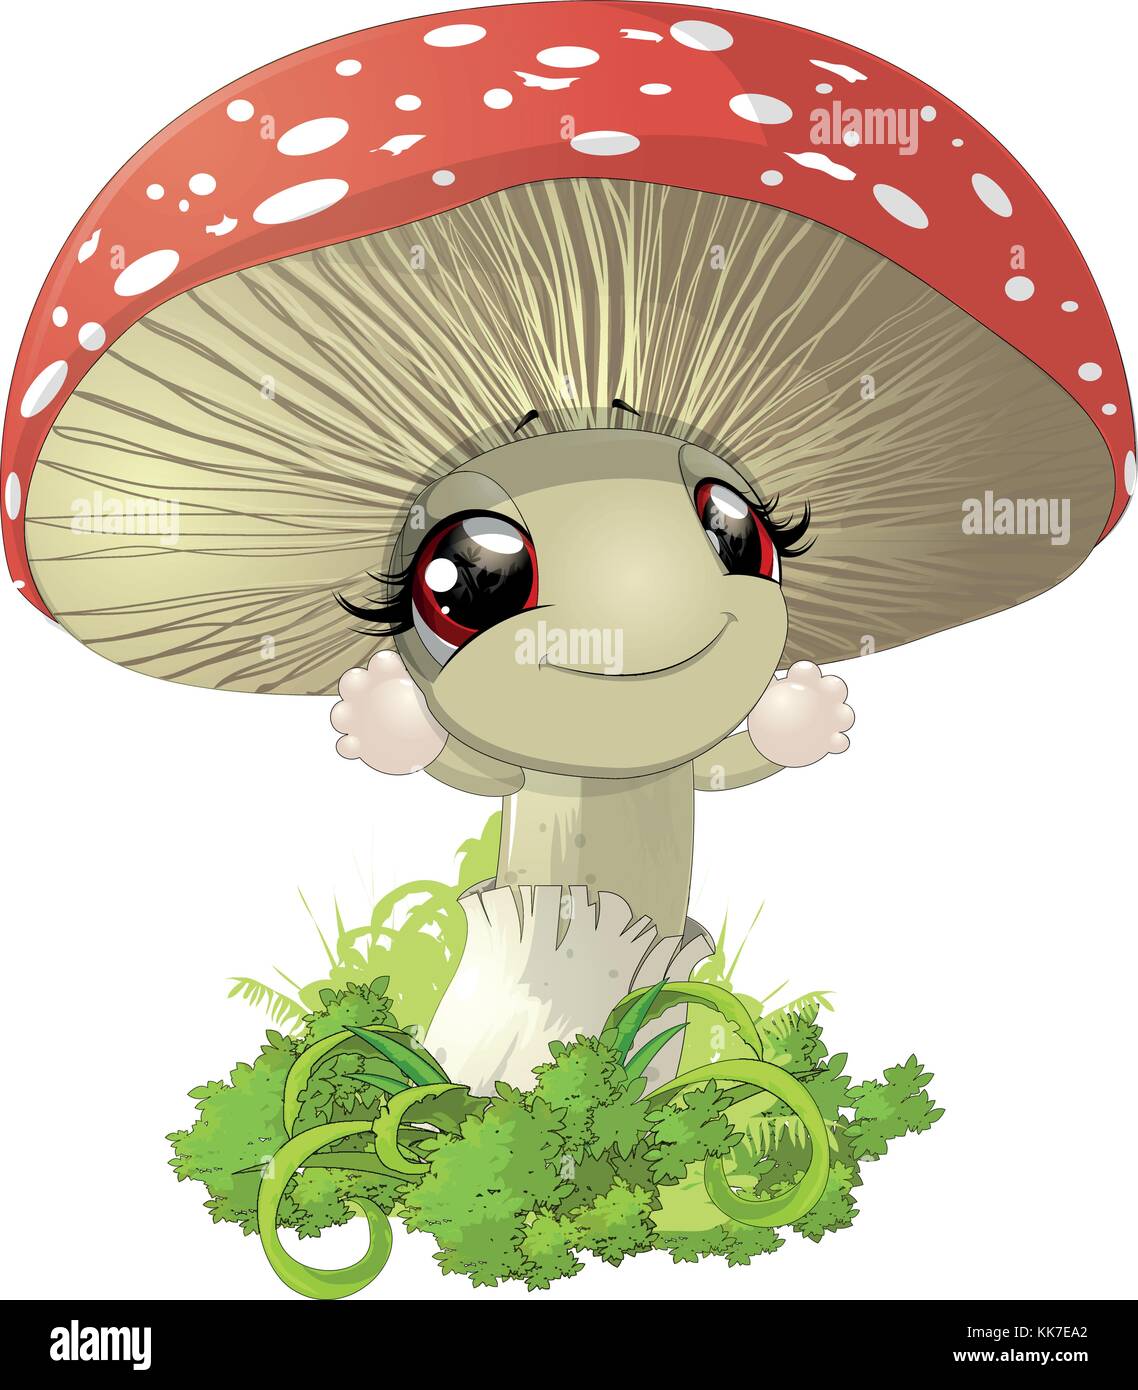 Schönen Pilz amanita mit roter Kappe und weißen Punkten Stock Vektor